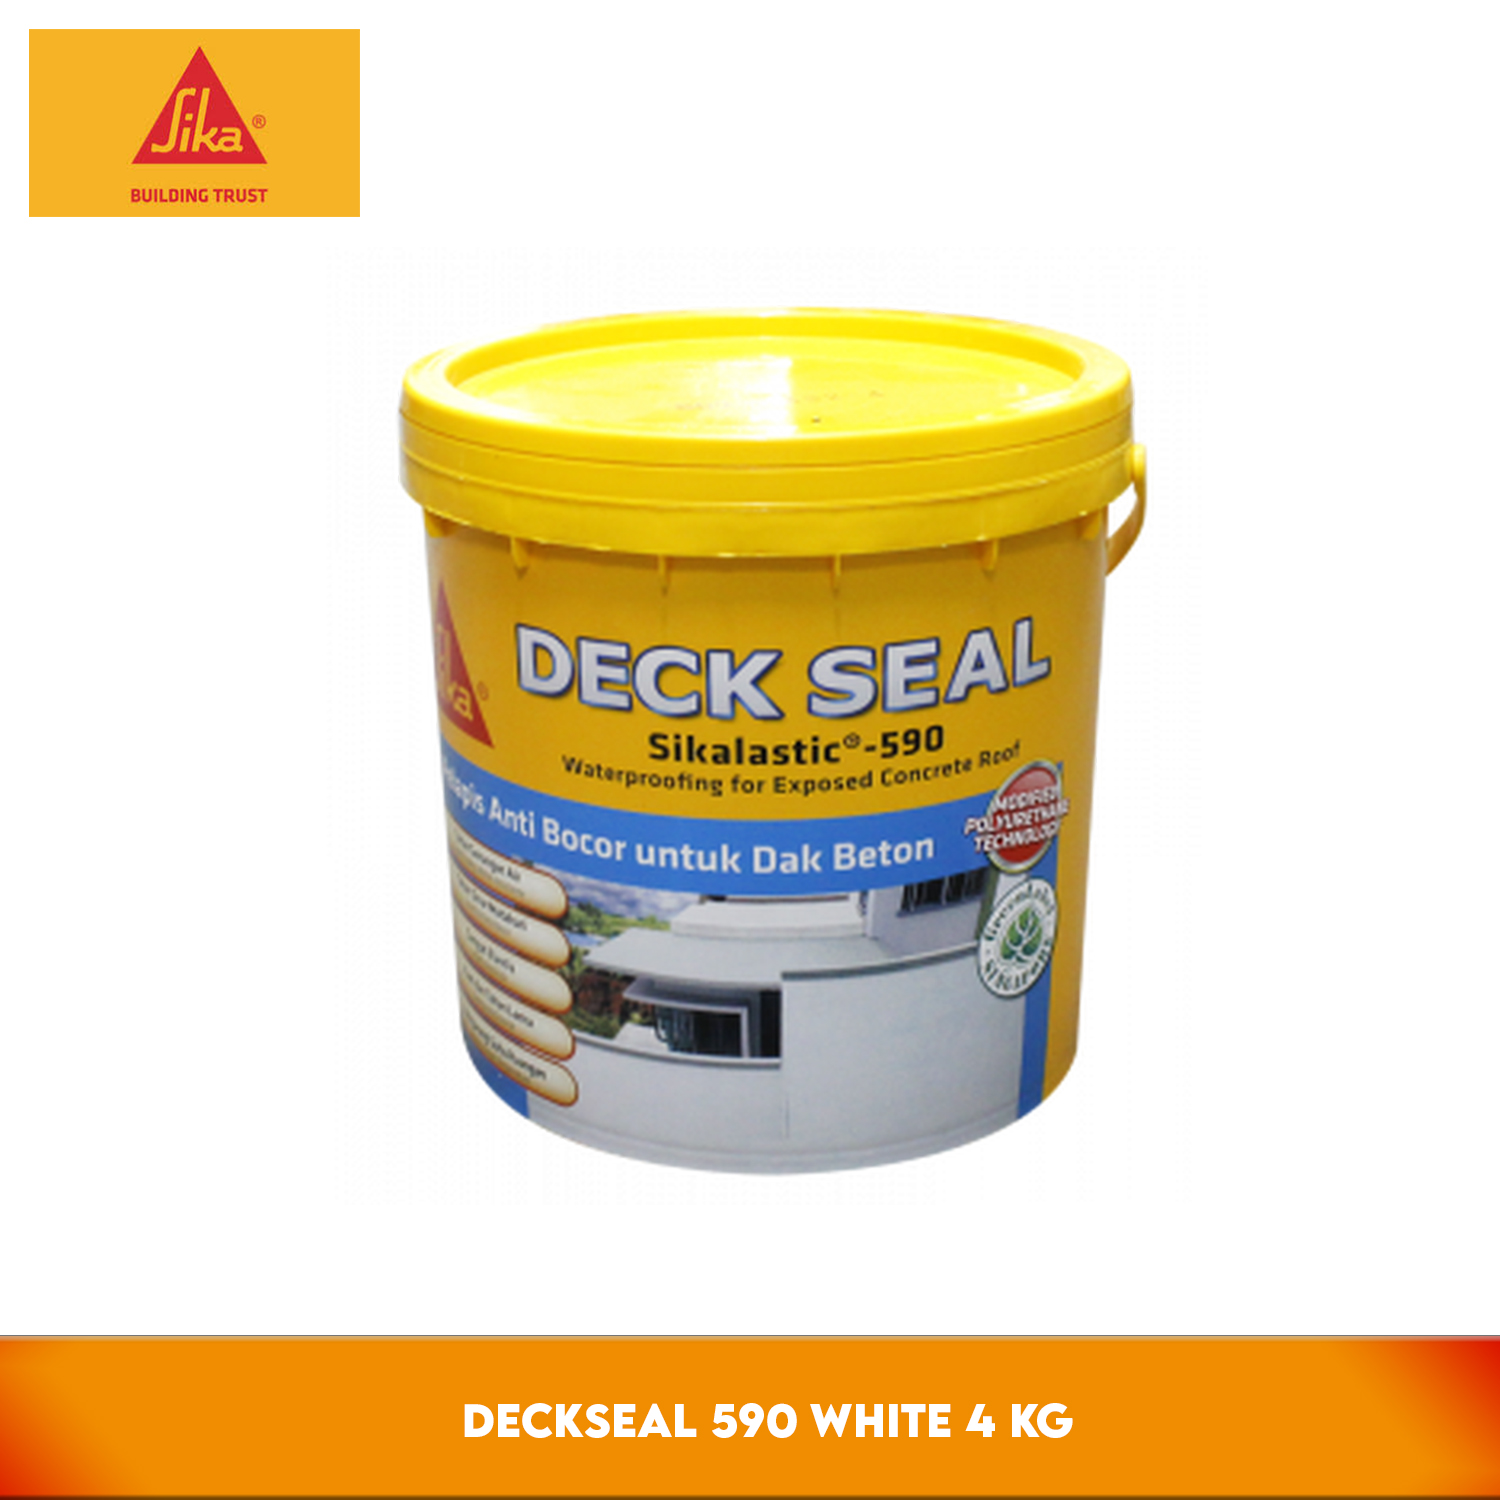 SIKA Deckseal 590 White 4 Kg - Waterproofing